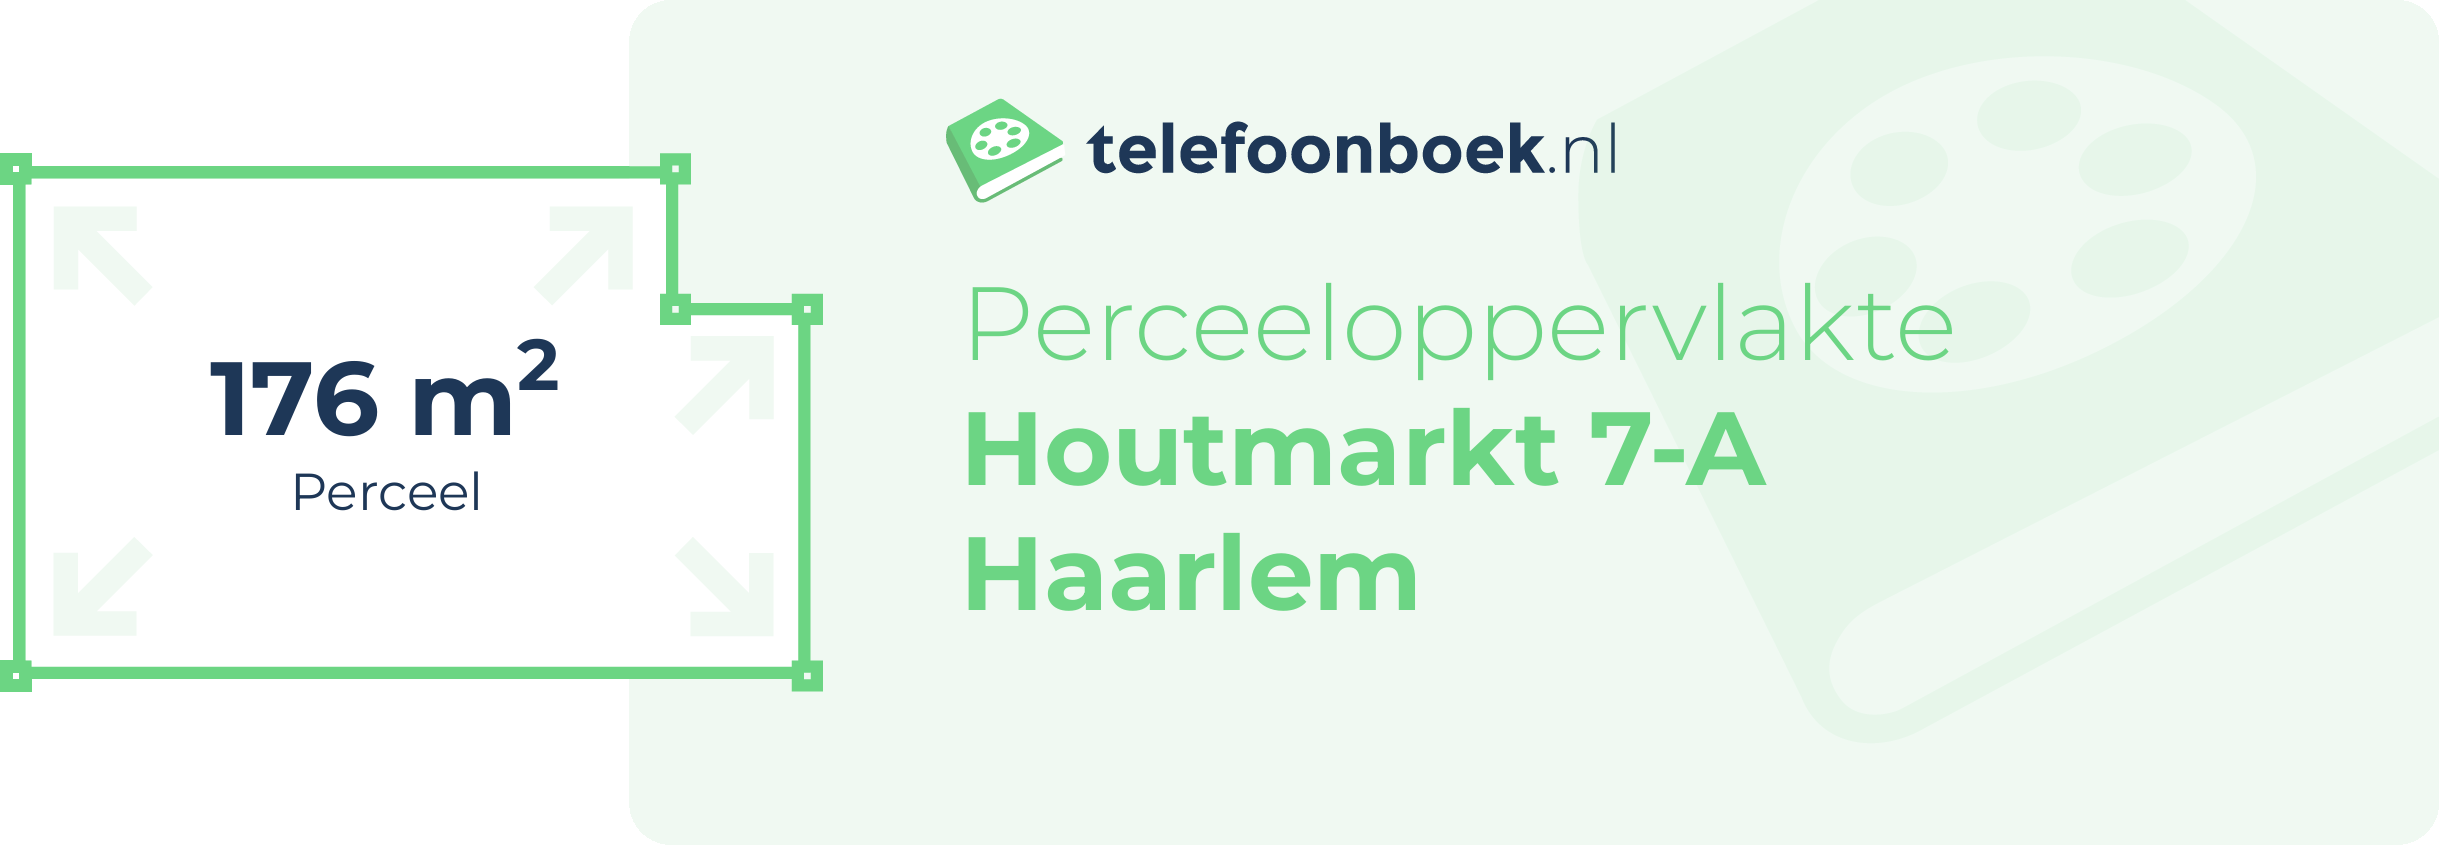 Perceeloppervlakte Houtmarkt 7-A Haarlem